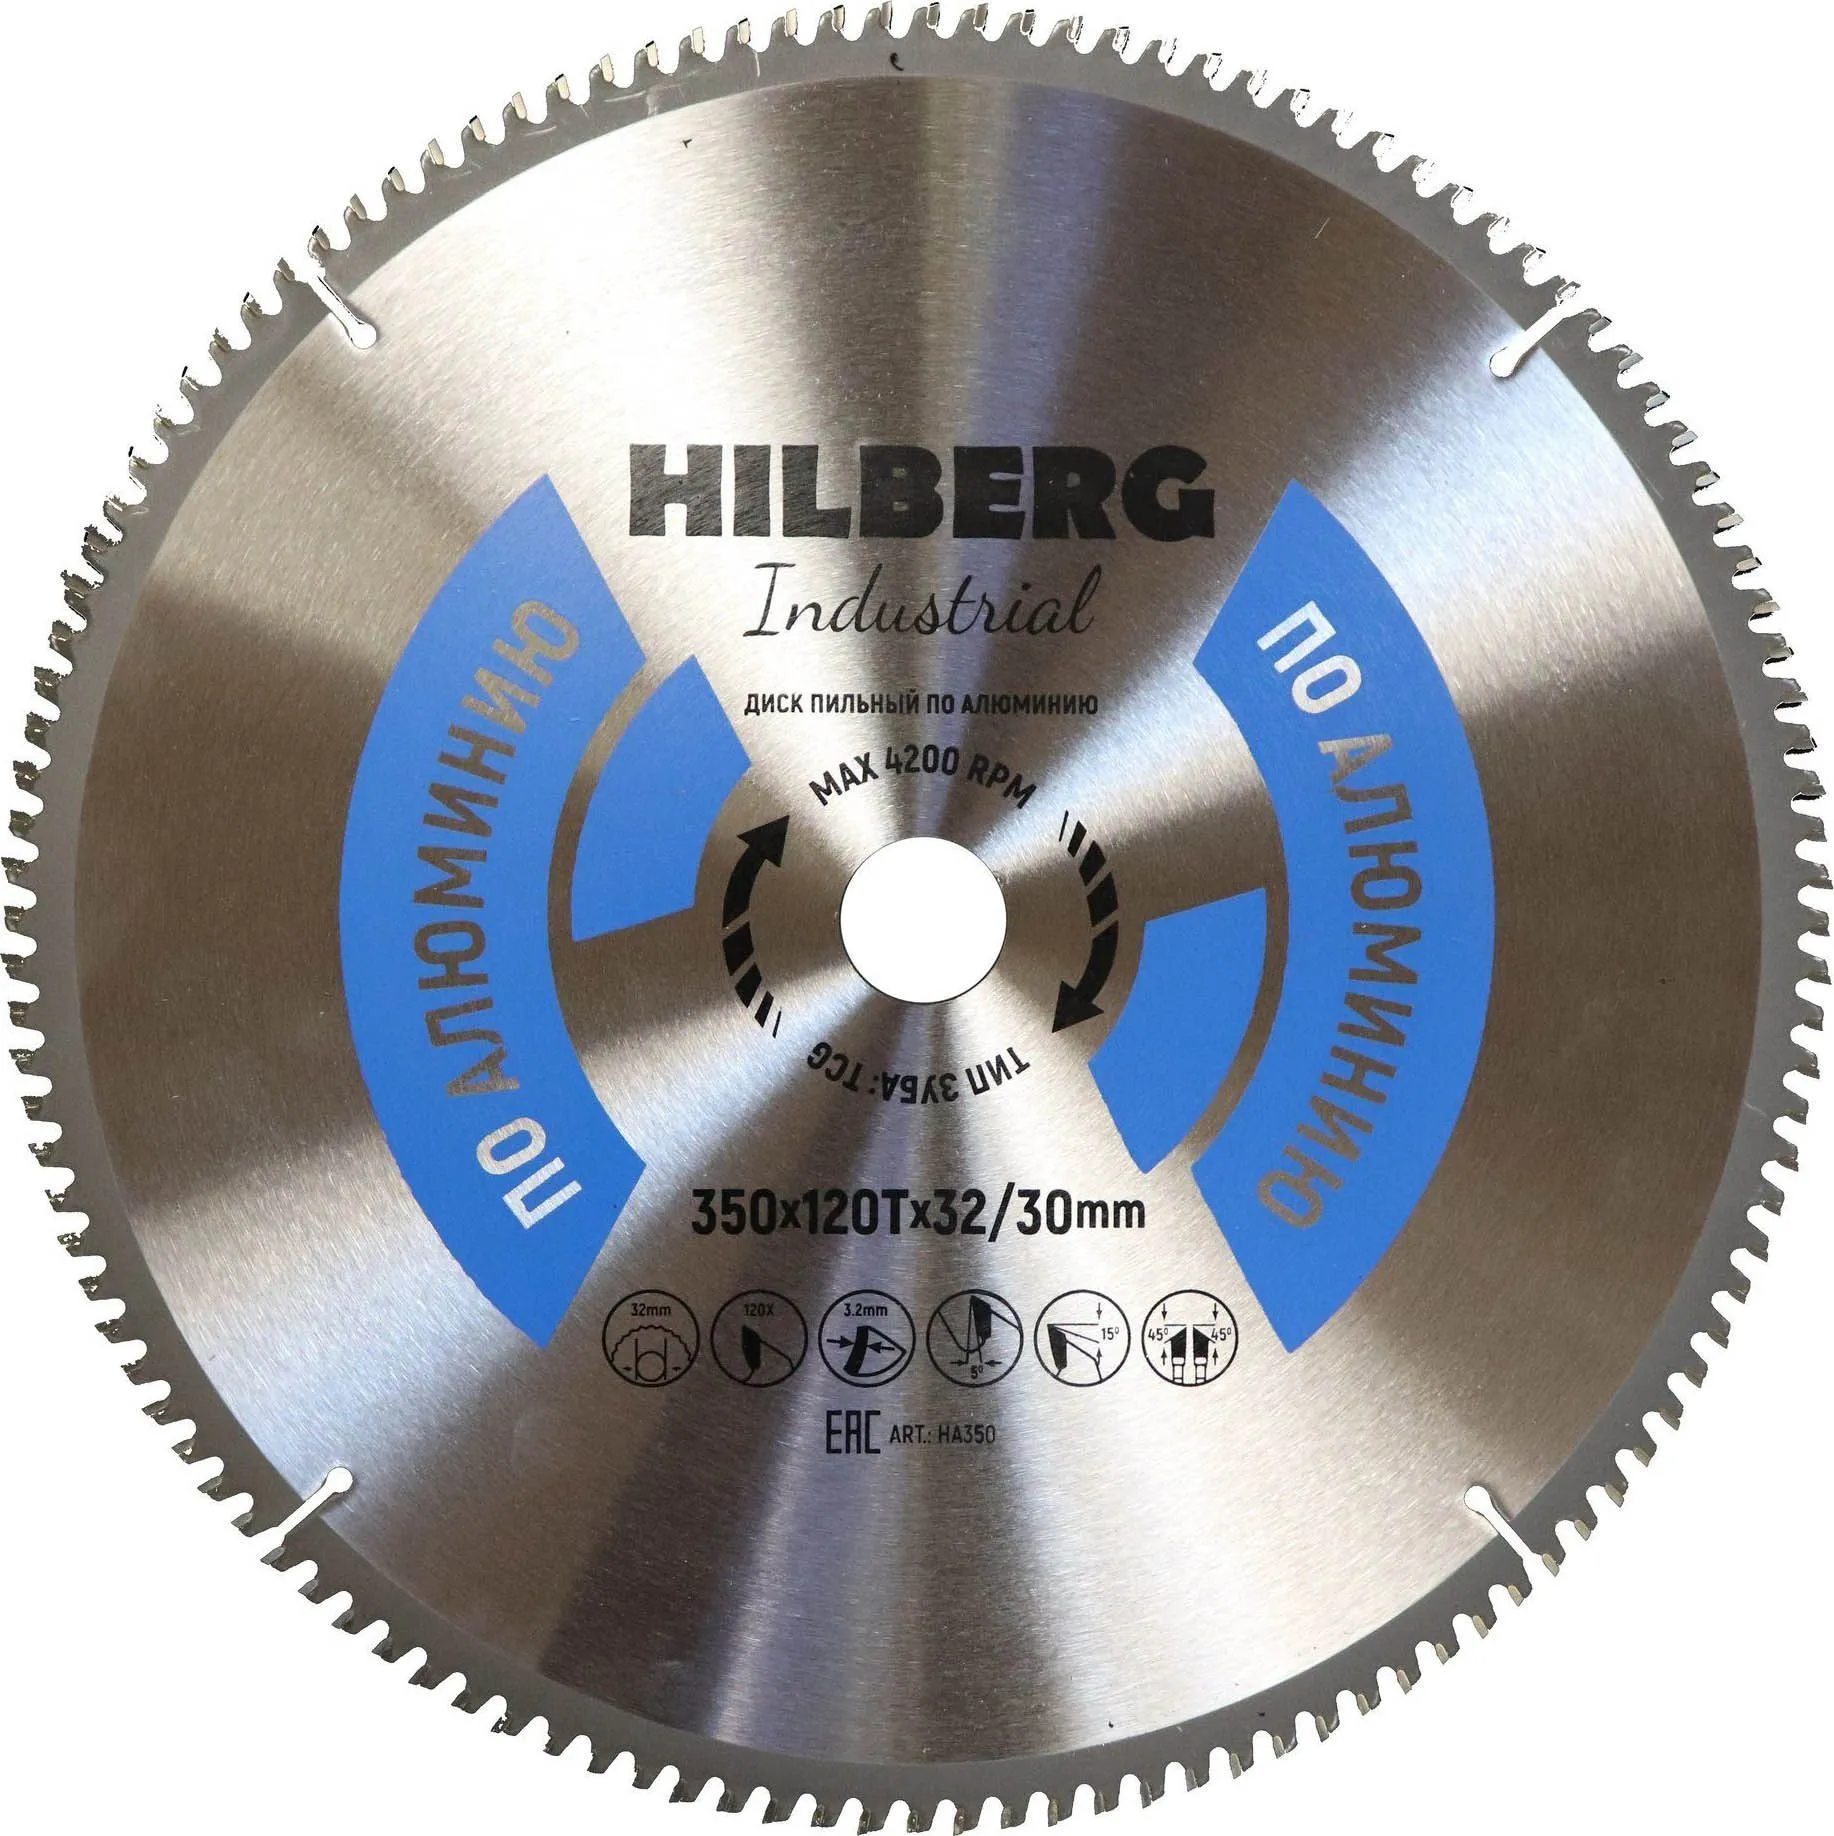 Диск пильный по алюминию 350х120Tx32/30мм Hilberg Industrial HA350